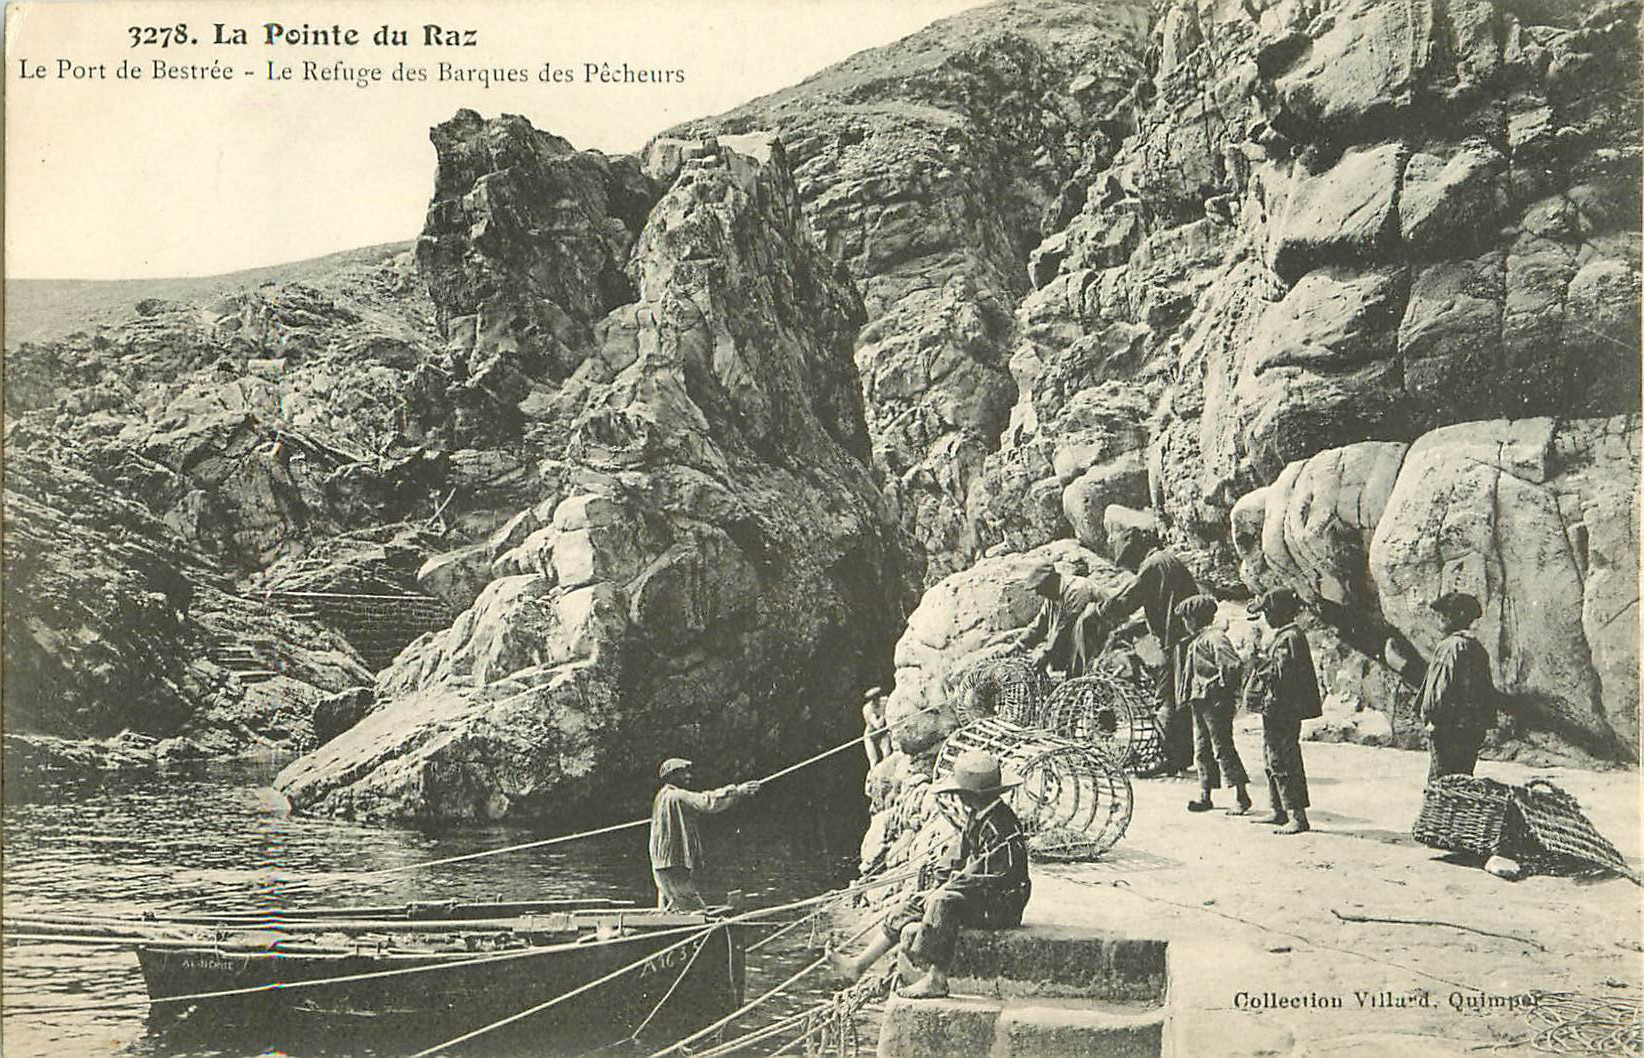 WW 29 LA POINTE DU RAZ. Port de Bestrée refuge des Barques des Pêcheurs d'Homard 1908